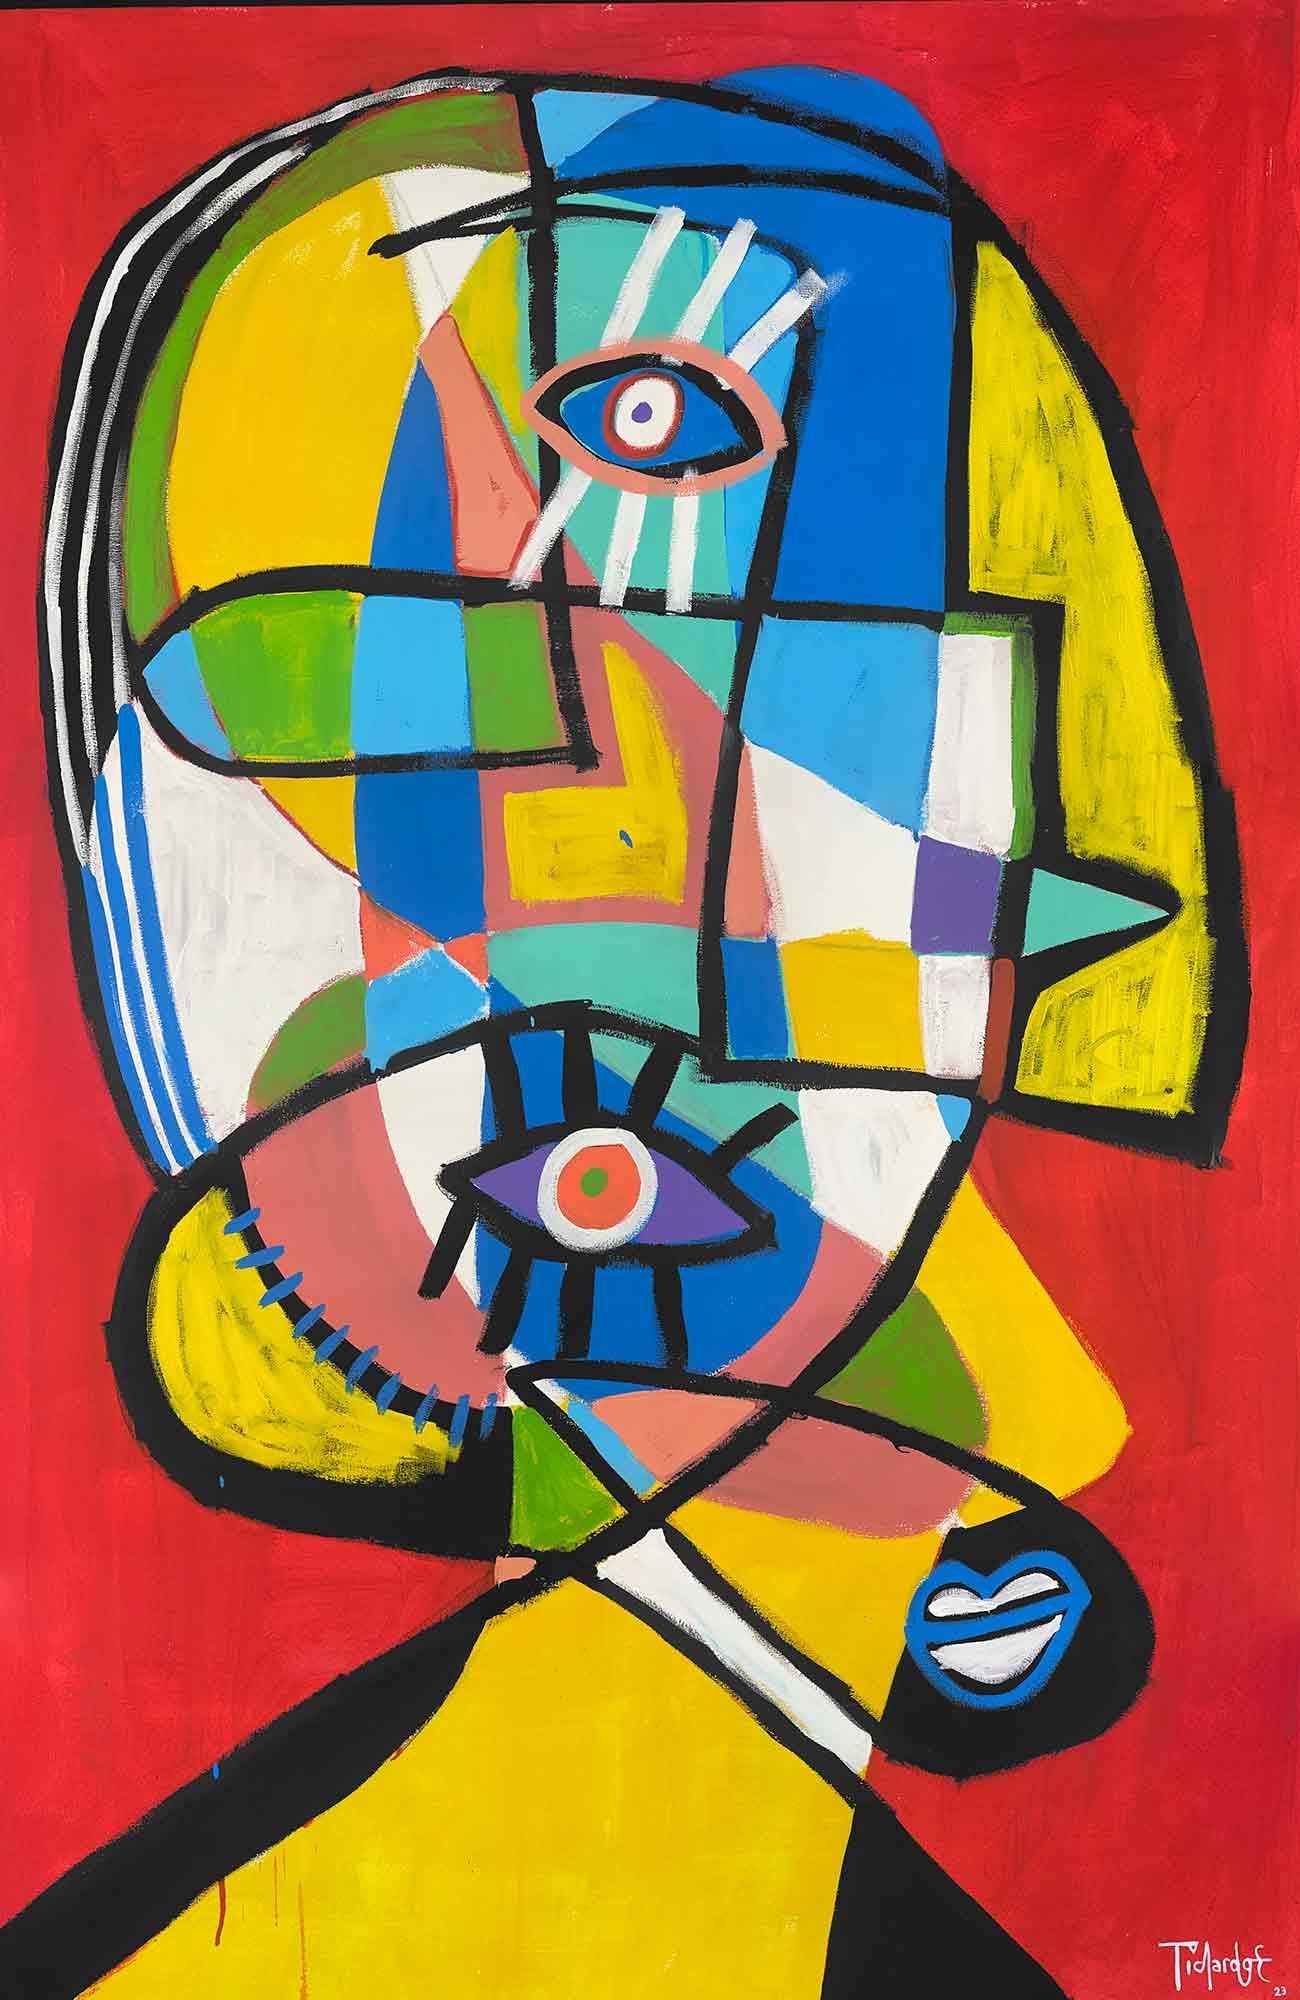 Abstract Painting Enrique Pichardo - Retrato en Rojo, Art contemporain, Peinture abstraite, 21ème siècle